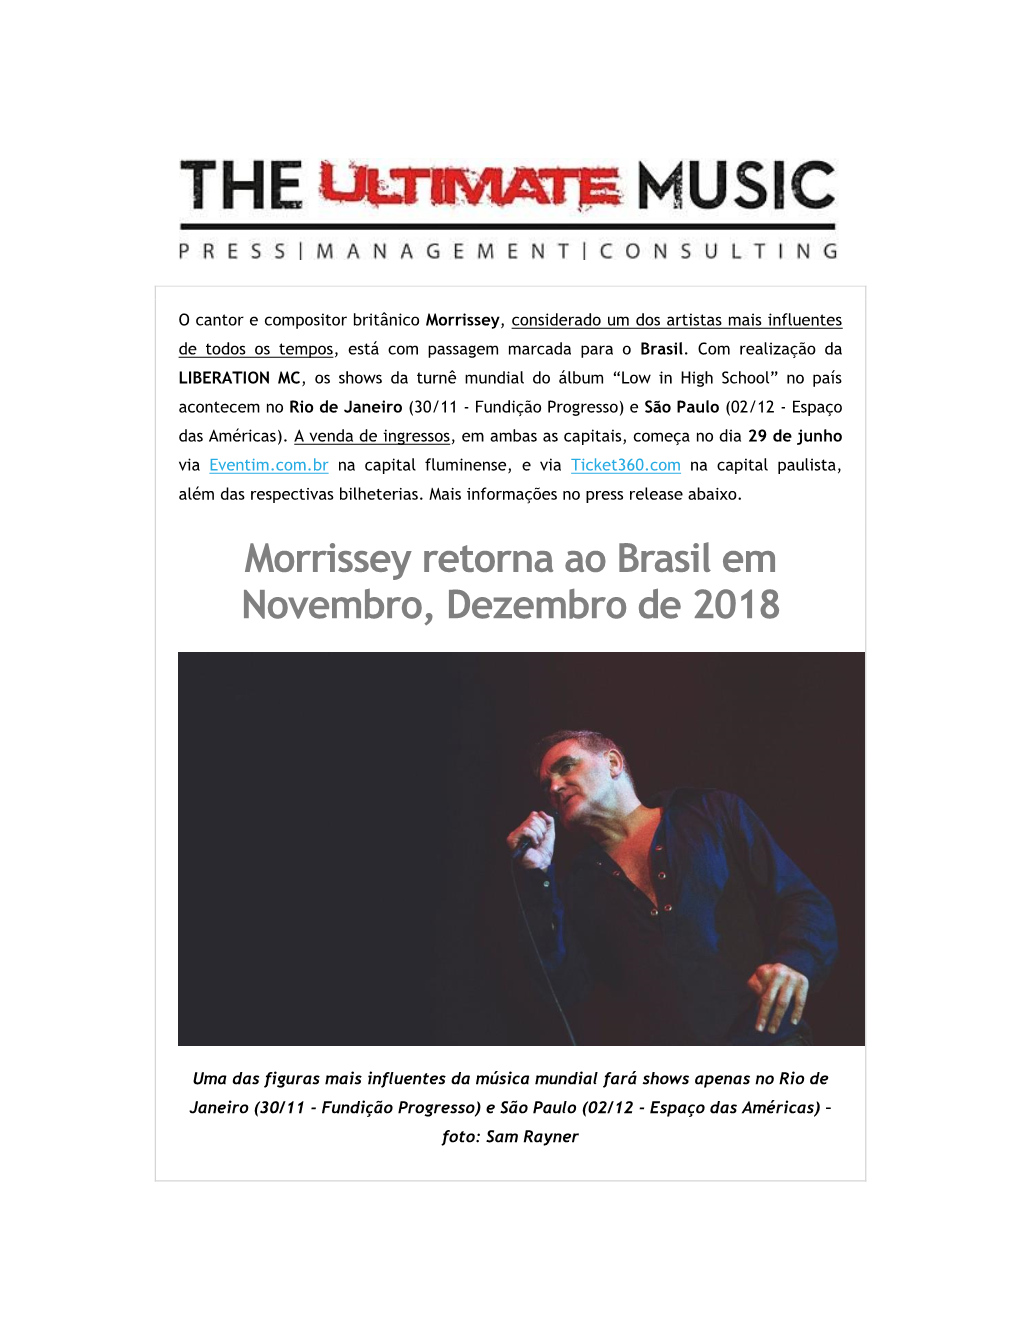 Morrissey Retorna Ao Brasil Em Novembro, Dezembro De 2018